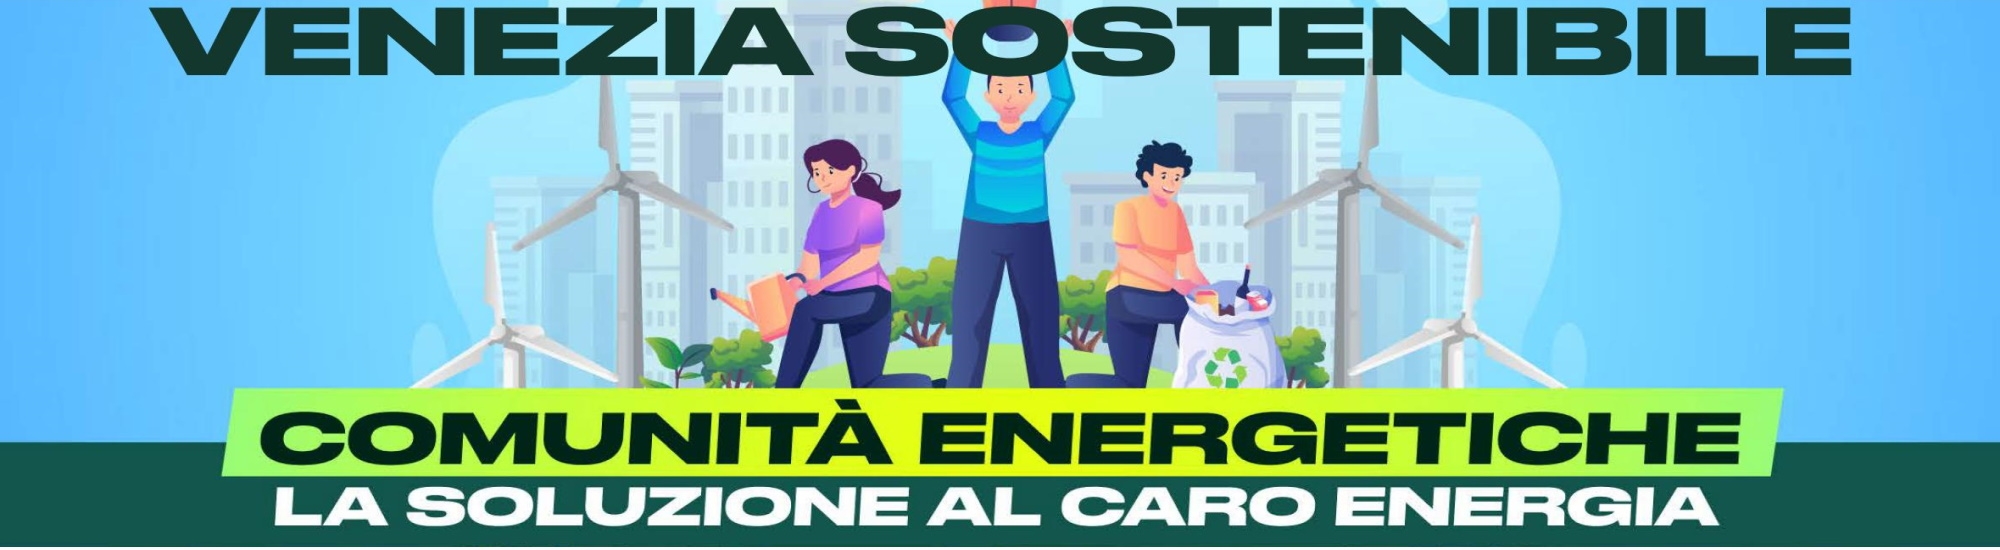 Immagine Venezia Sostenibile - La soluzione al caro energia